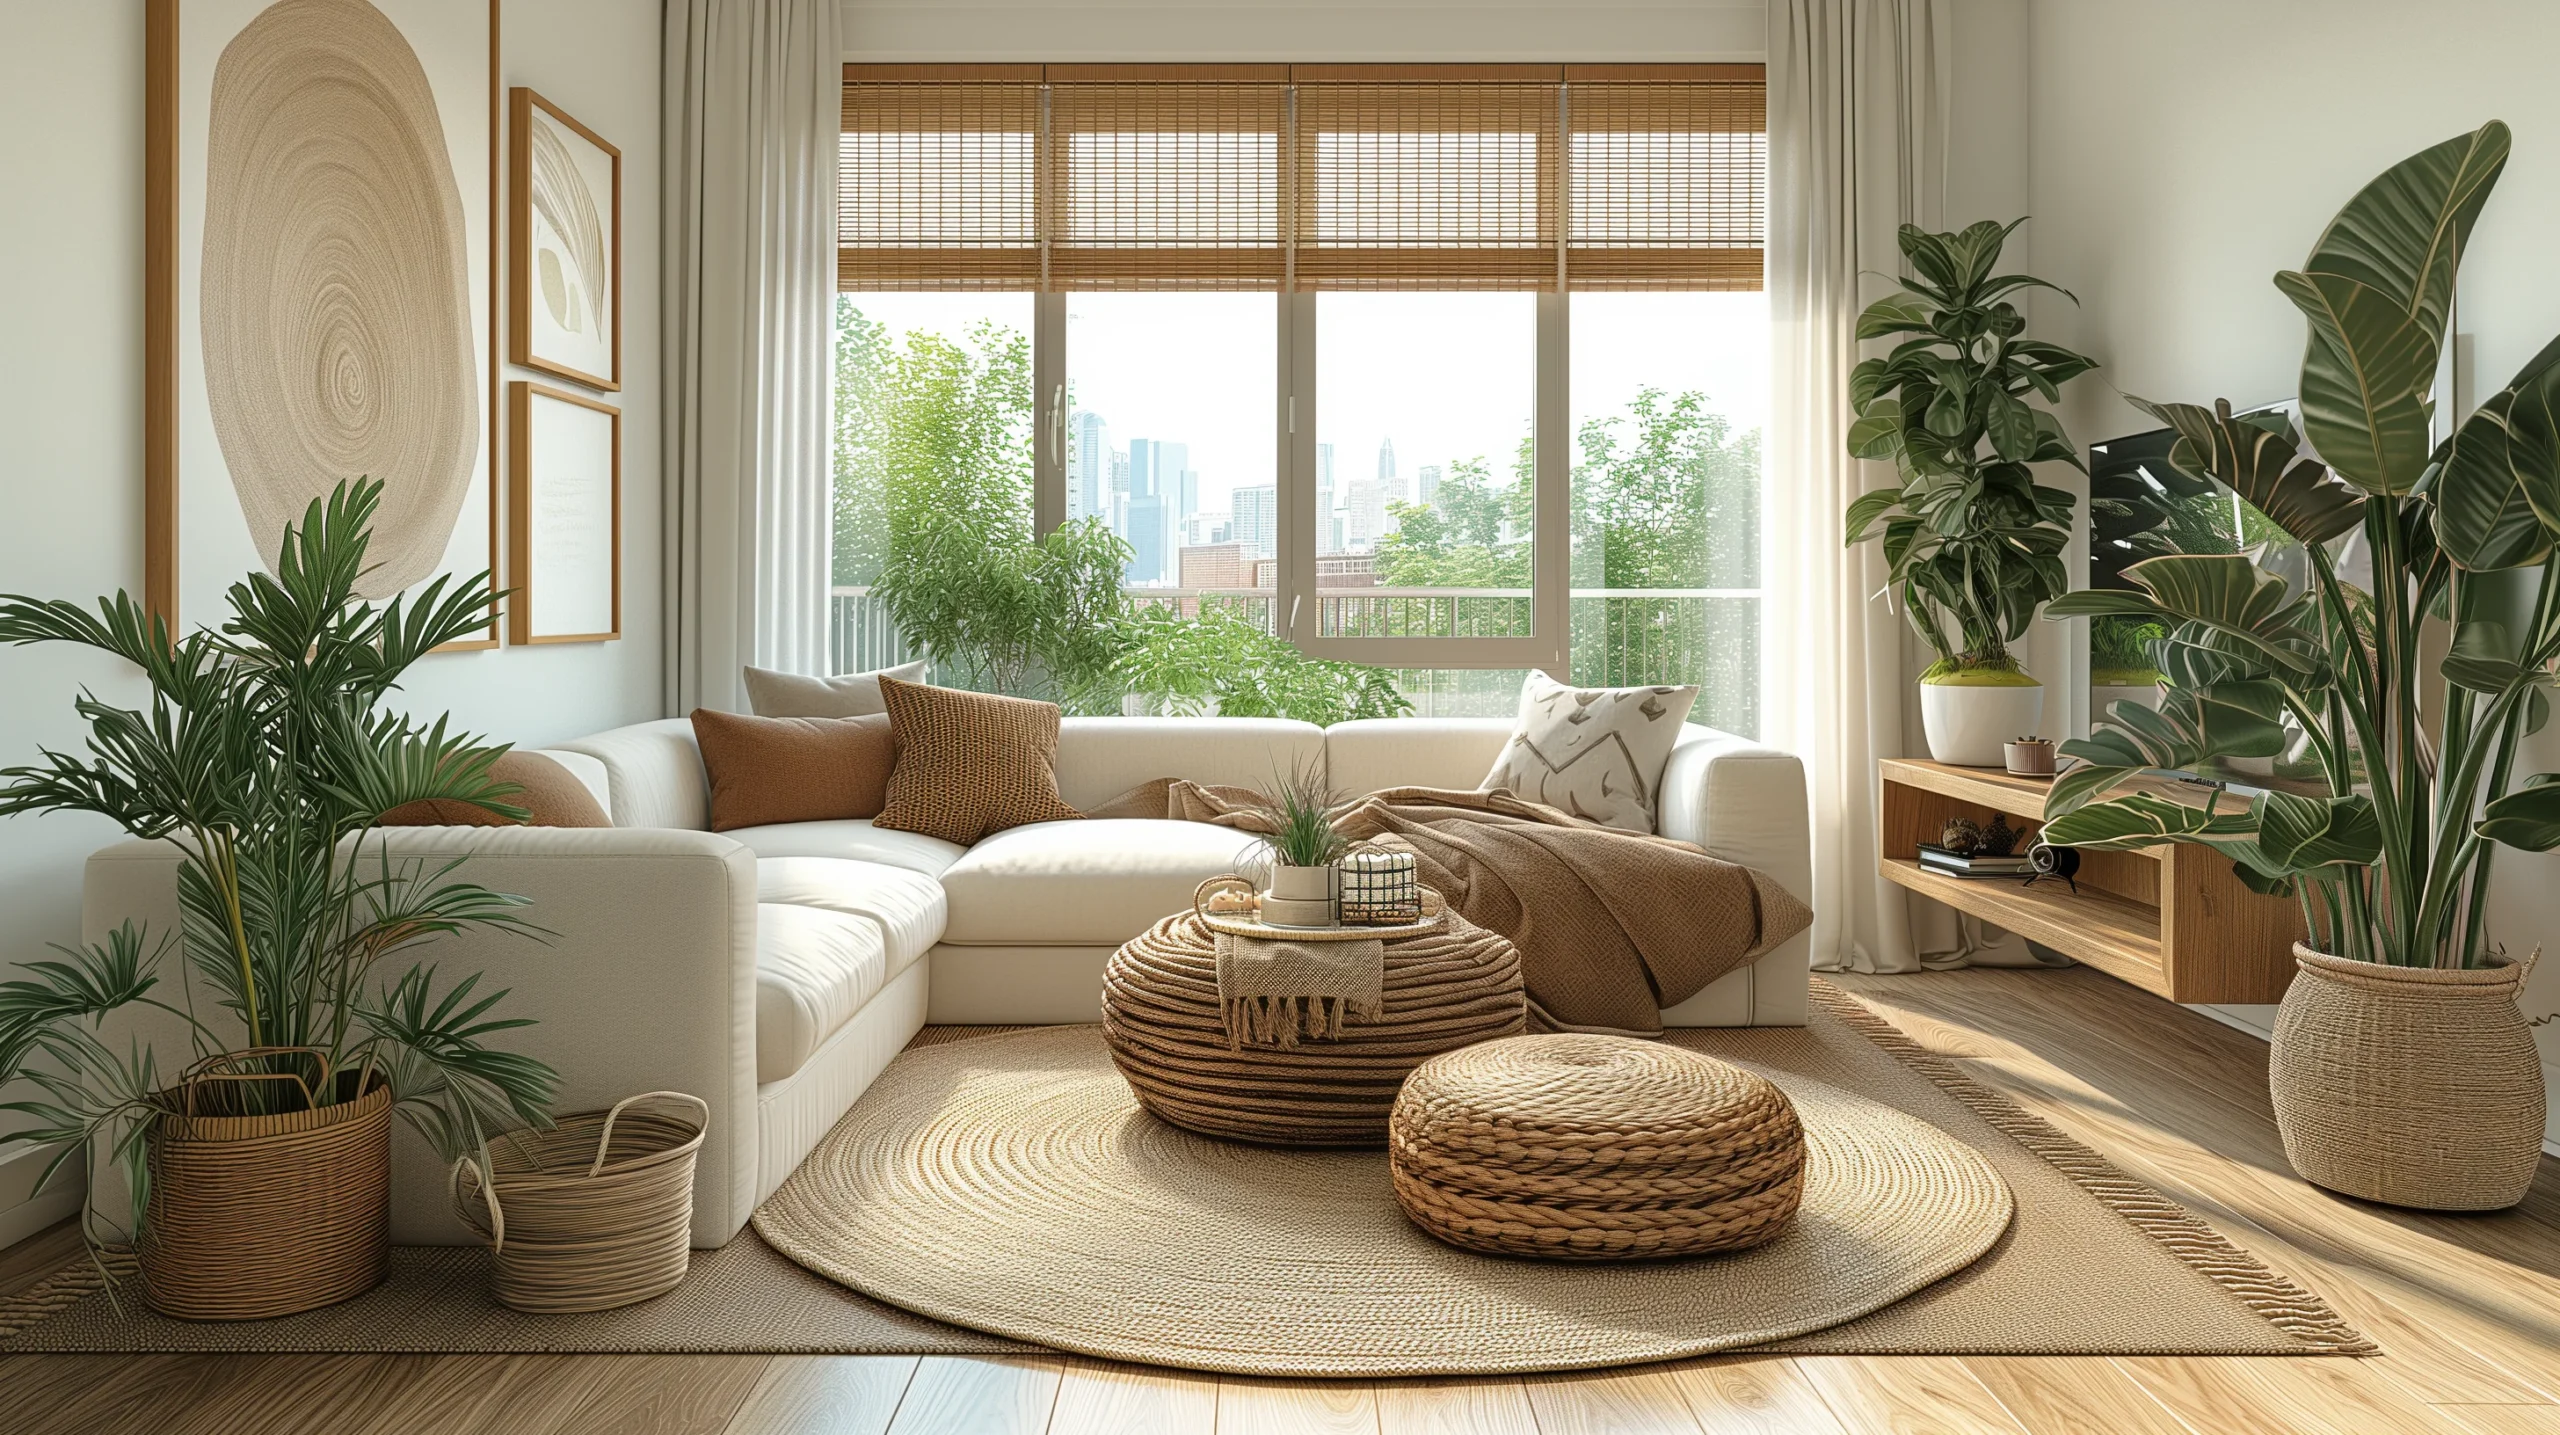 Boho Living Room Decor Ideas on a Budget